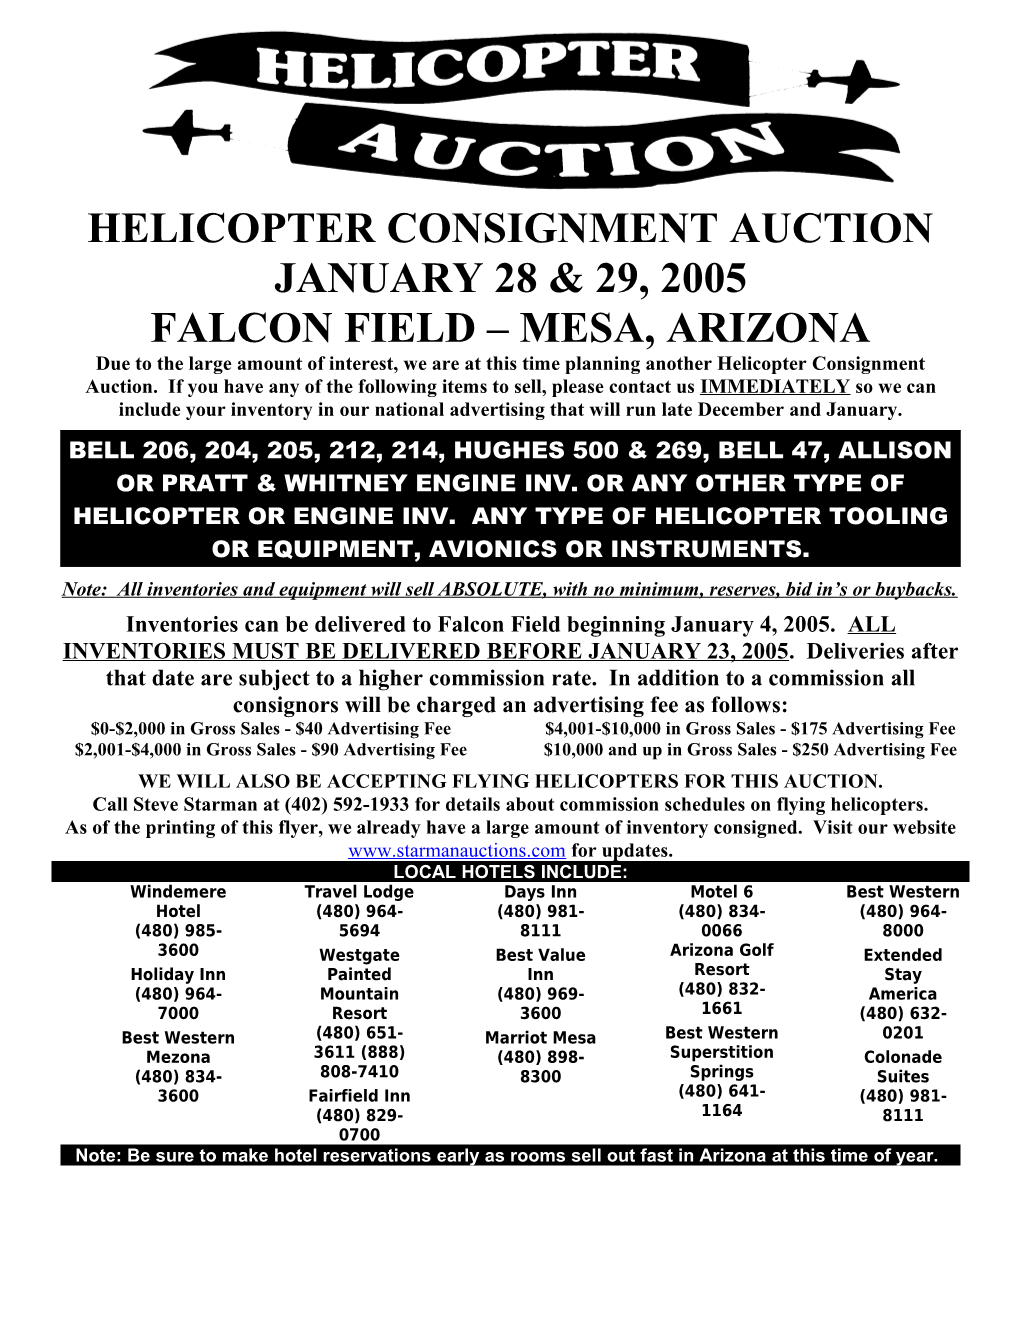 Falcon Field Mesa, Arizona